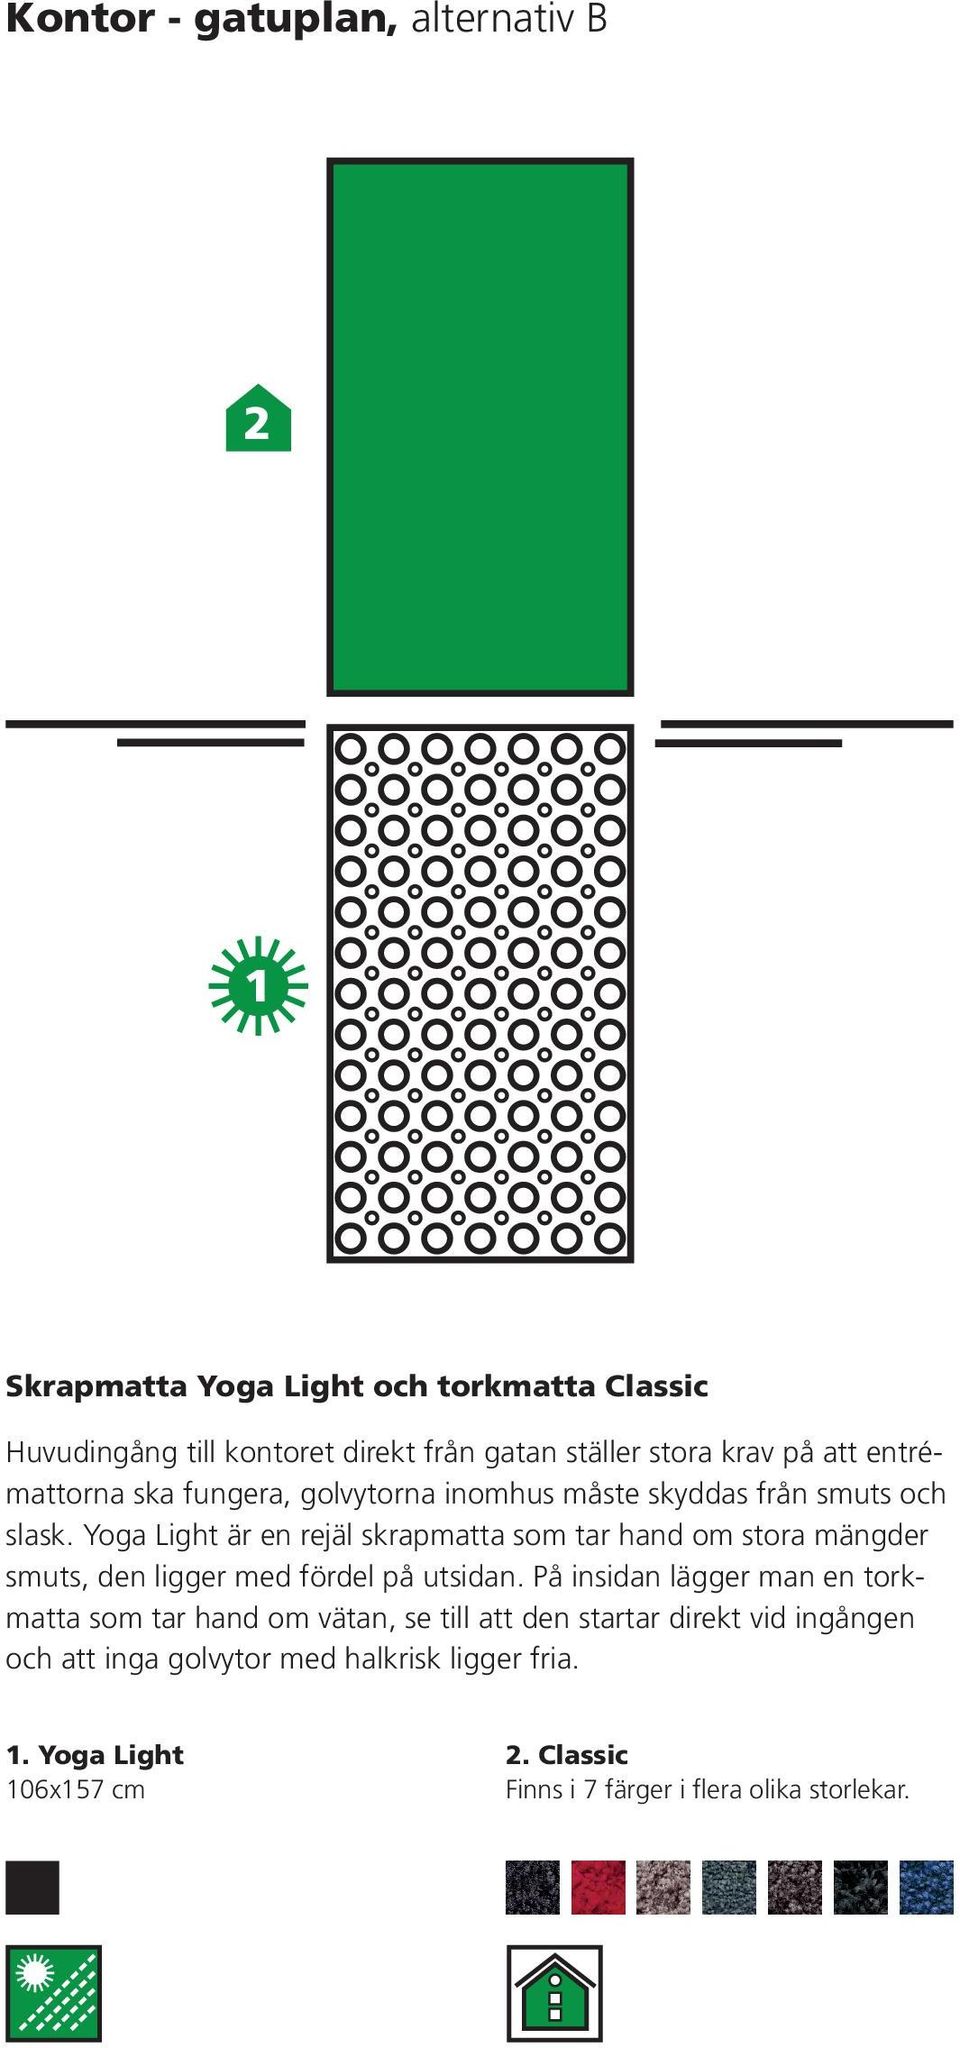 Yoga Light är en rejäl skrapmatta som tar hand om stora mängder smuts, den ligger med fördel på utsidan.